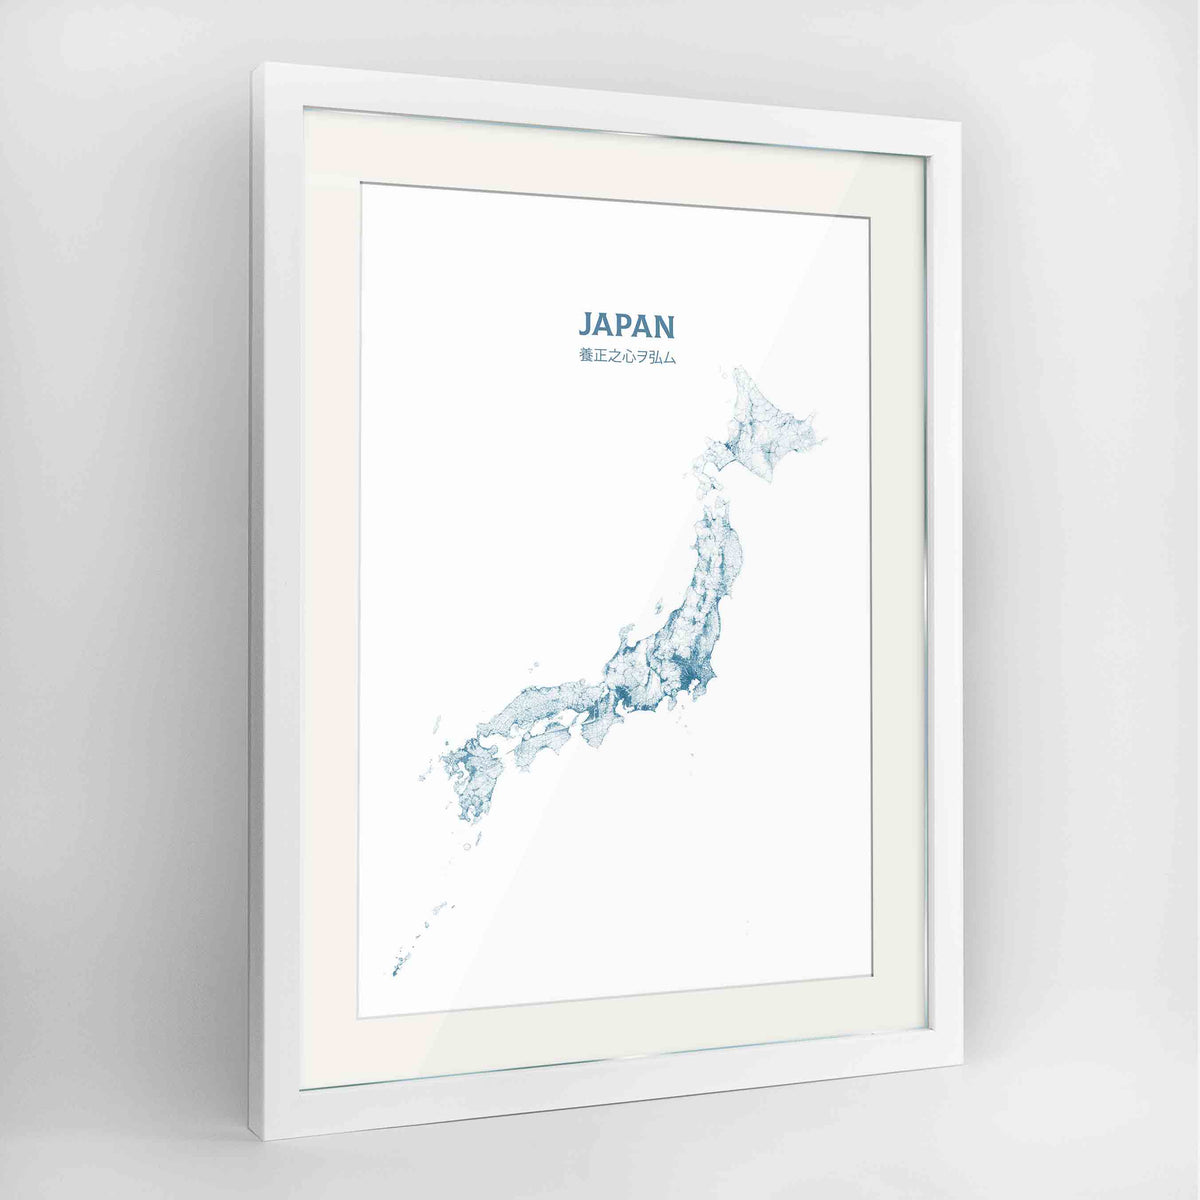 Japan - All Roads Art Print - Framed